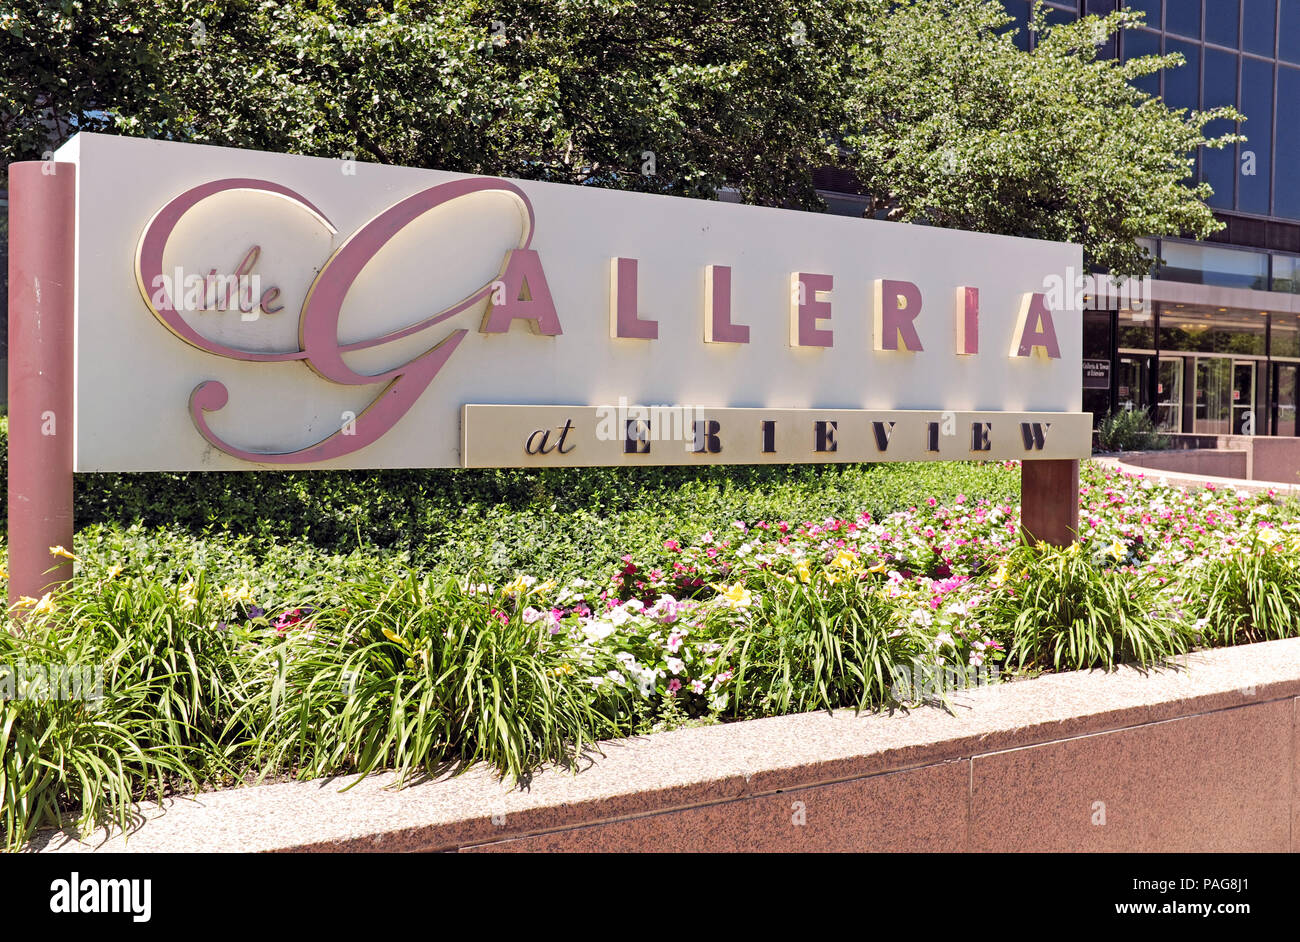 Le Galleria à Erieview affiche à l'extérieur de la galerie marchande de deux étages et 40 étages Erieview office tower dans le centre-ville de Cleveland, Ohio, USA. Banque D'Images